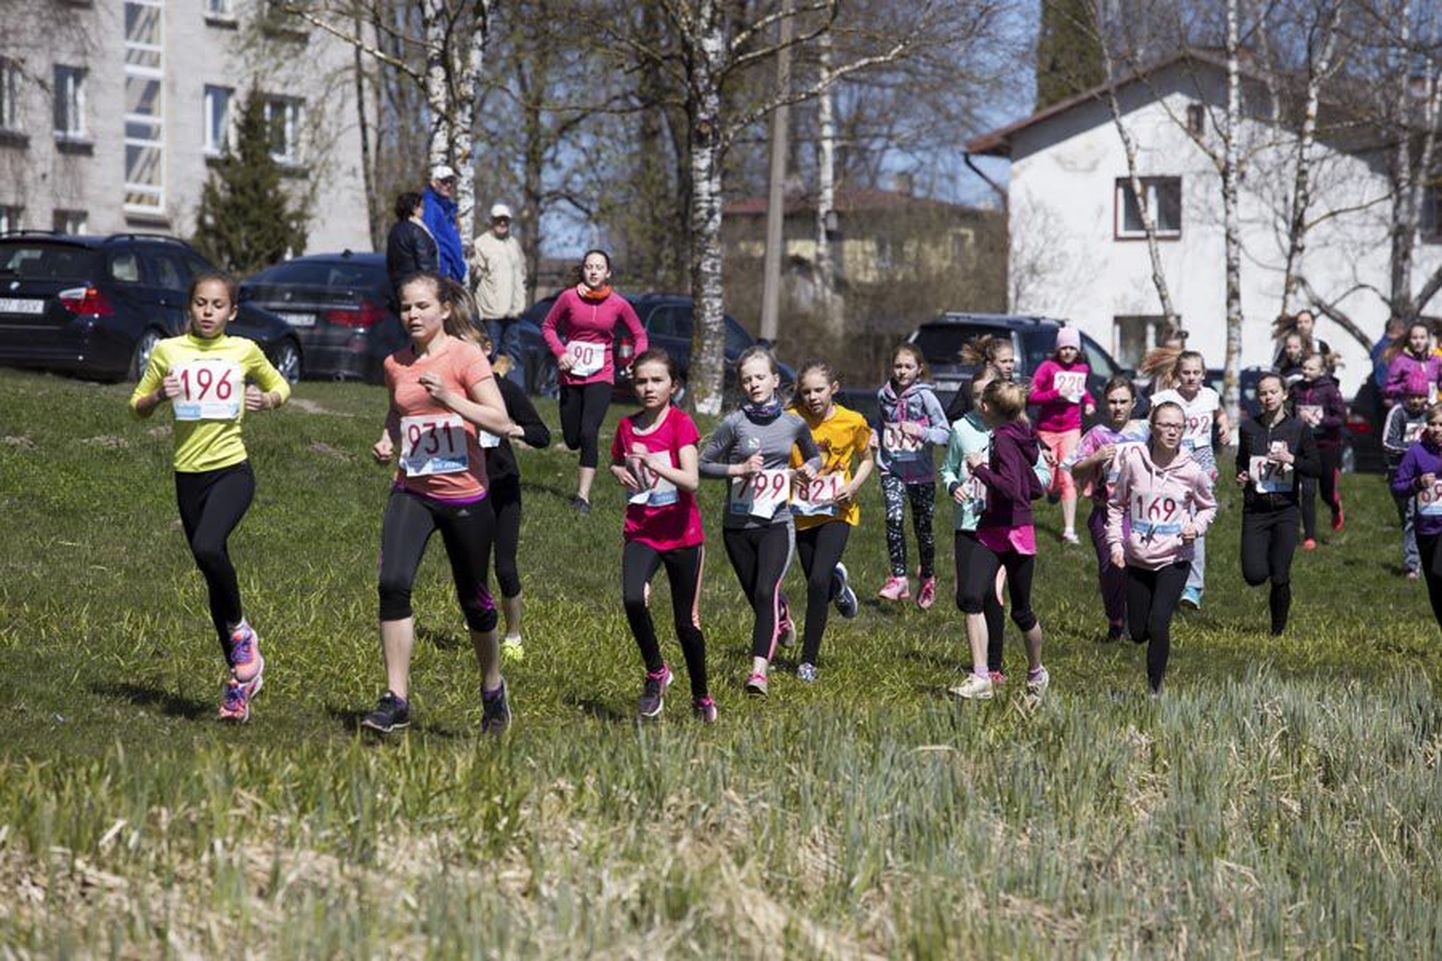 Läinud laupäeval sai teoks 67. laste Paala järve jooks, mis kujunes tänu imeilusale ilmale rahvarohkeks. Selle lõpetas 498 noort spordisõpra, nende hulgas 142 tillujooksul osalenut.